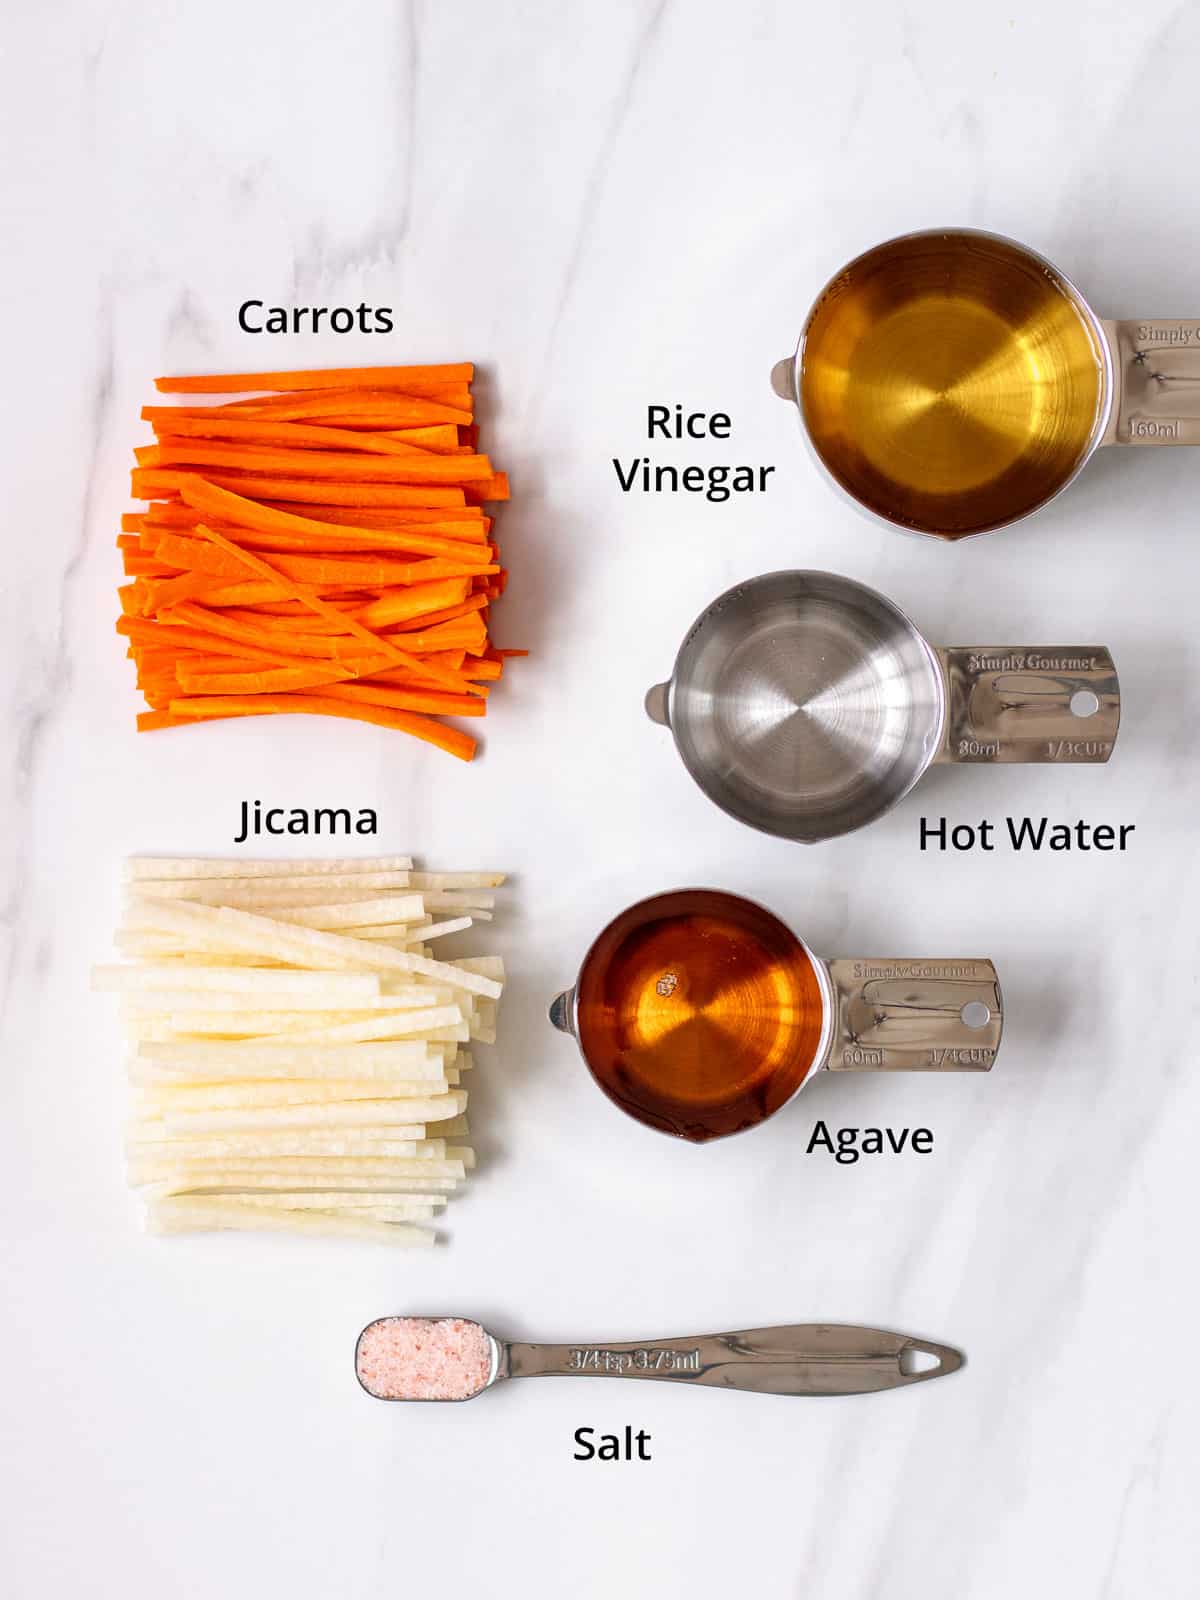 Julienne carrots, jicama and marinade ingredients.